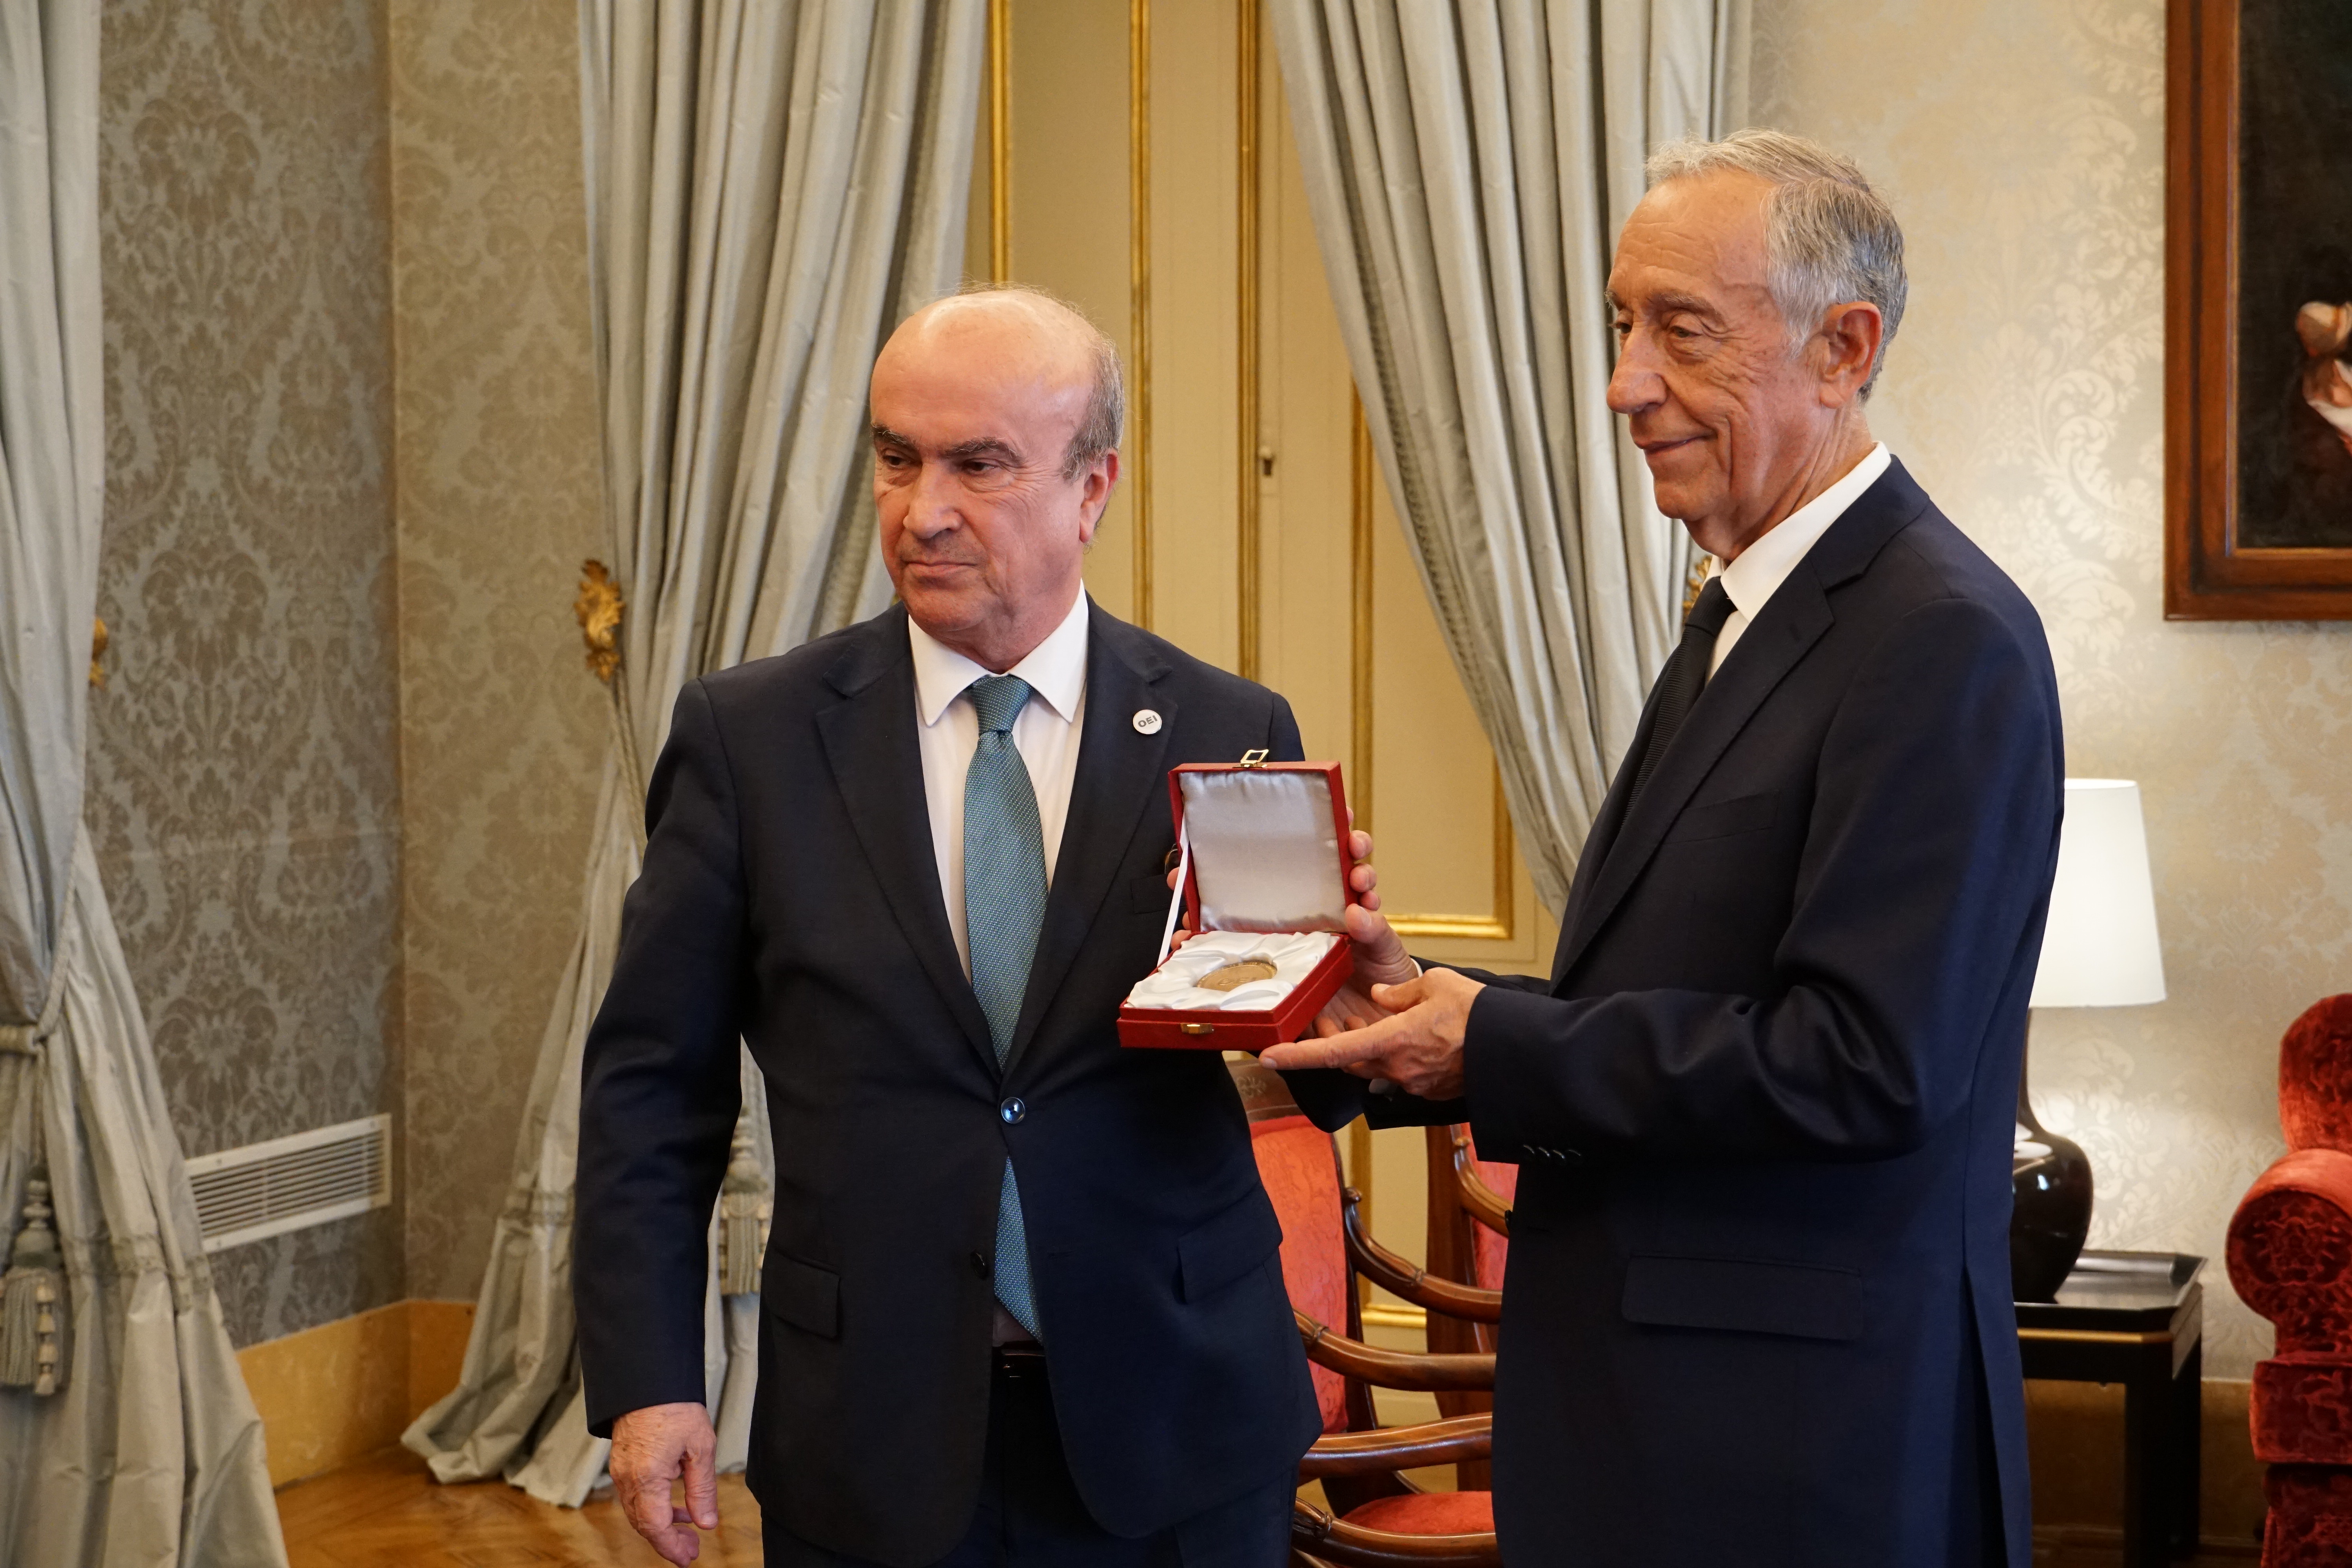 Marcelo Rebelo de Sousa distinguido com Medalha de Honra da OEI